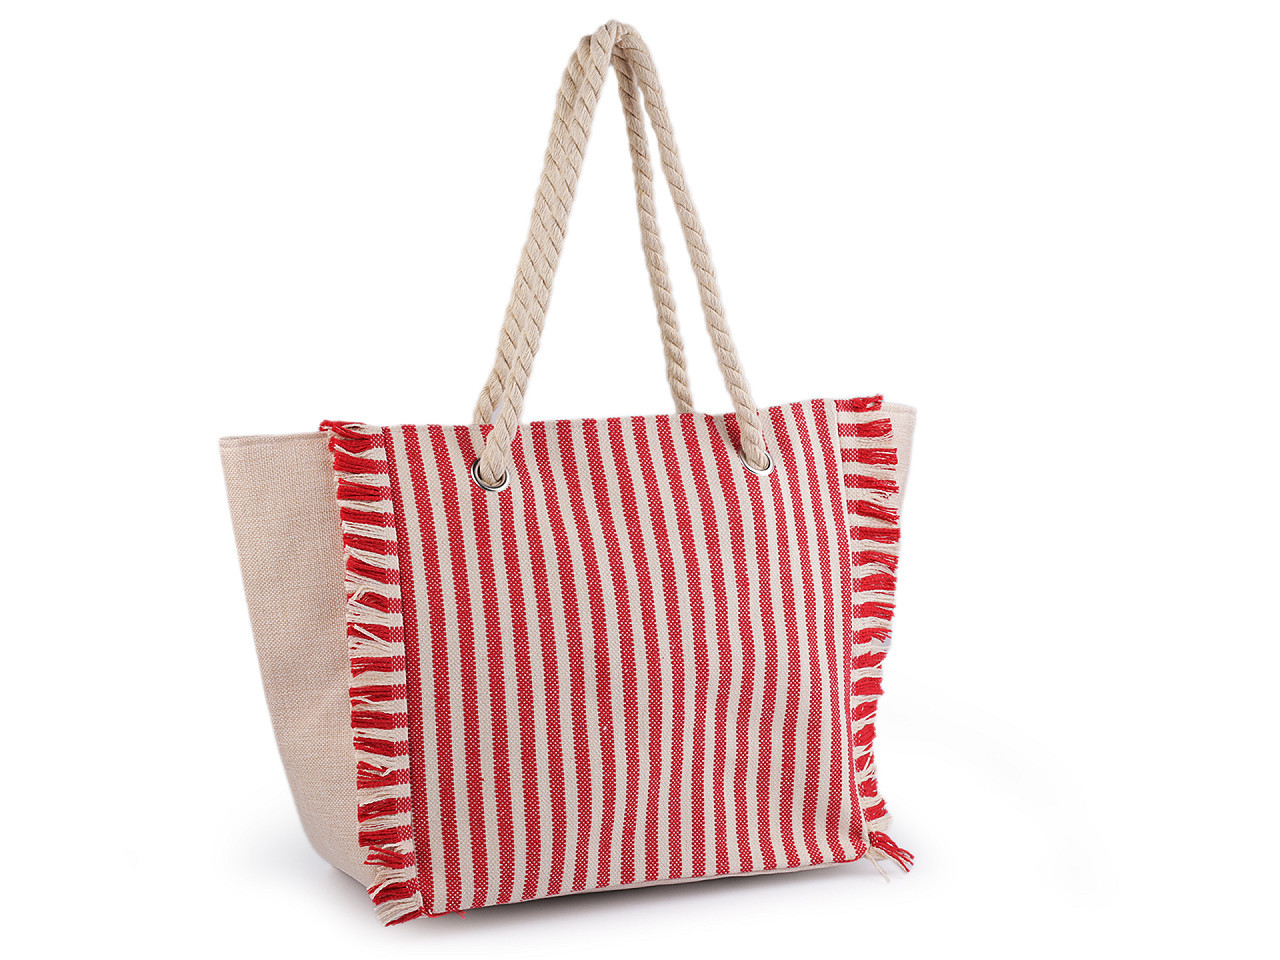 Letní / plážová taška s pruhy 33x52 cm, barva 2 červená